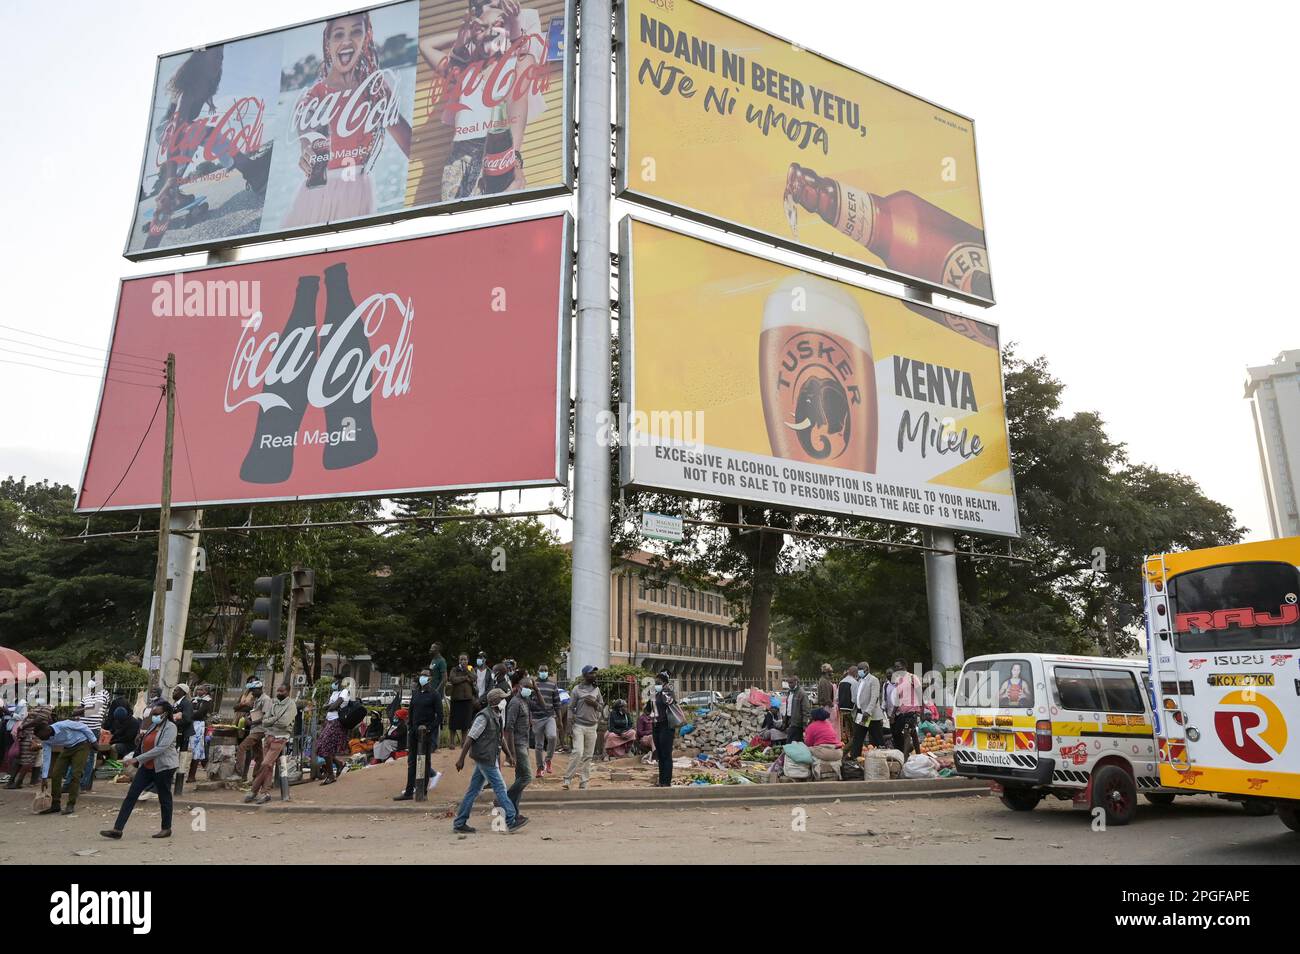 KENIA, Nairobi, Verkehr, Coca Cola und Tusker Werbung, Tusker Bier gehört zur british Diageo Group / KENIA, Nairobi, Stadtzentrum, Verkehr, Coca Cola und Tusker Bier Werbung Stockfoto